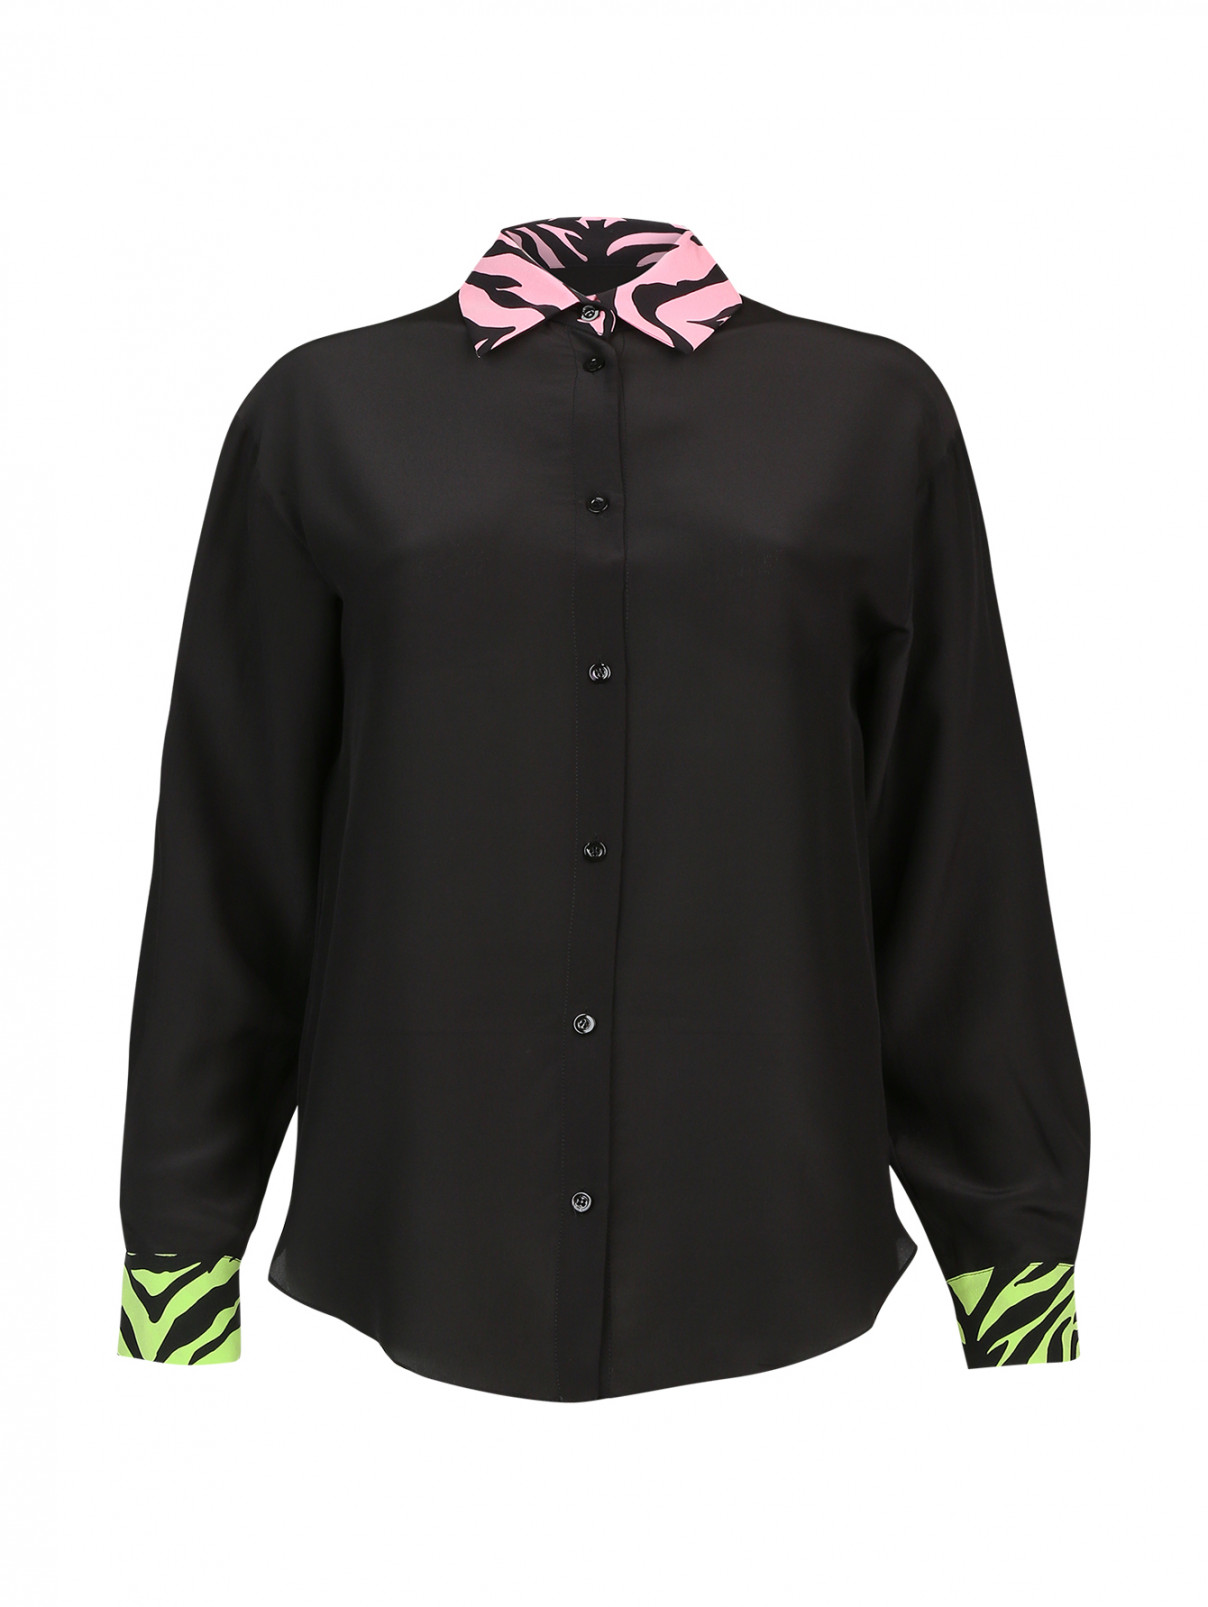 Шелковая блуза с отделкой Moschino Cheap&Chic  –  Общий вид  – Цвет:  Узор